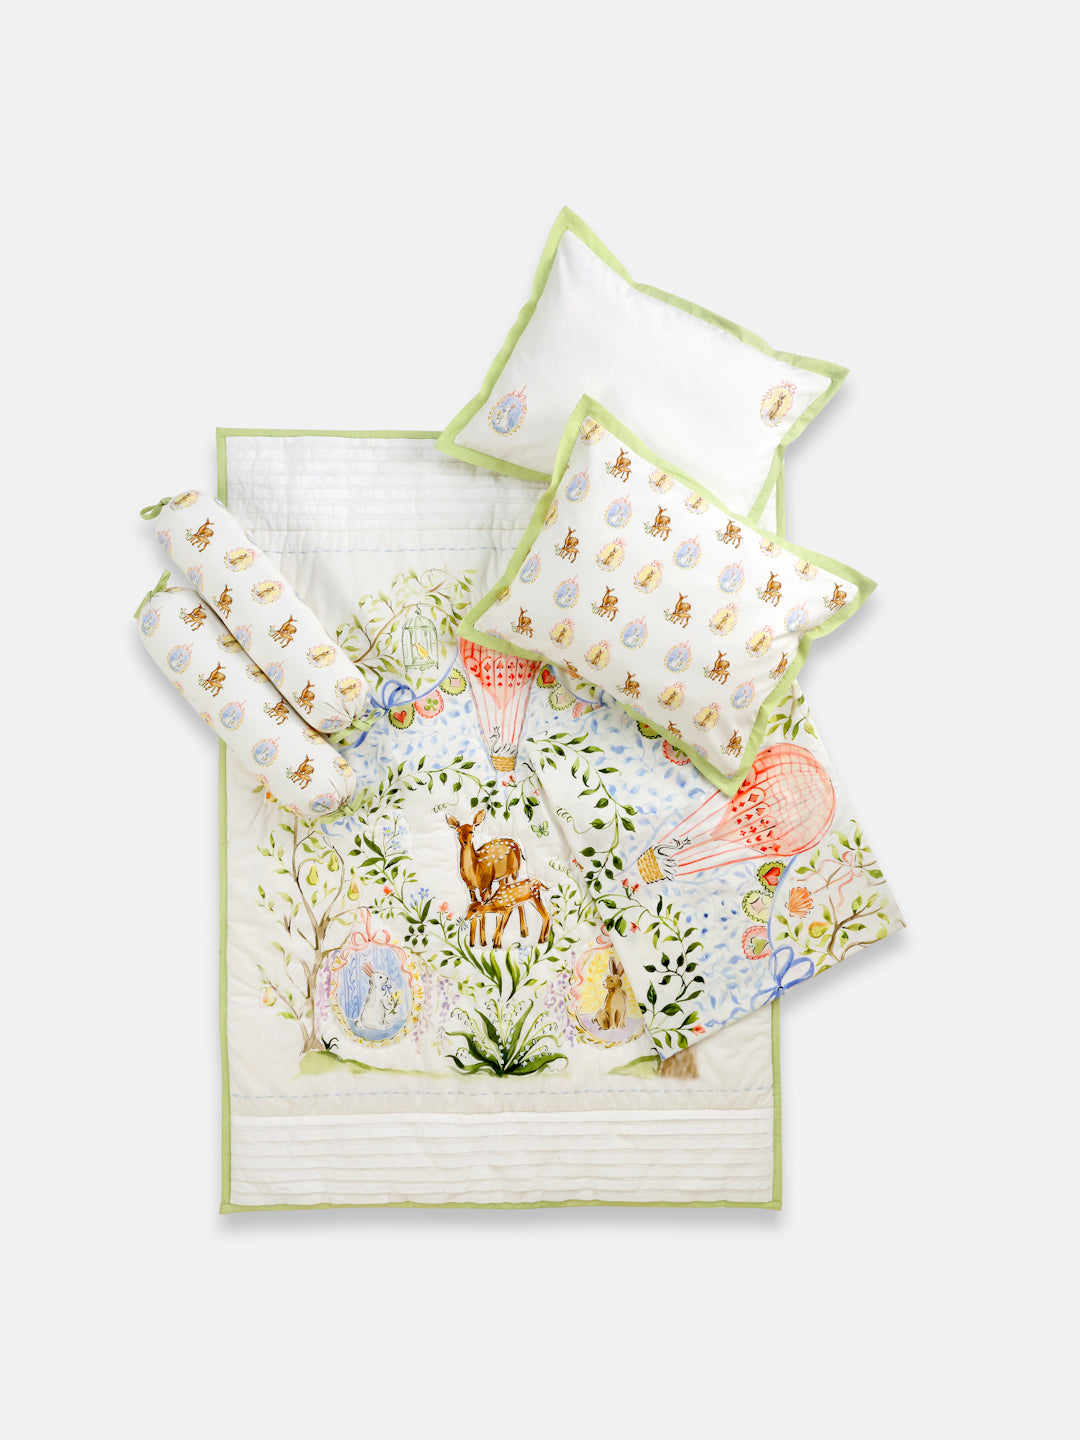 Quilt & Bedding Set - Pack of 3 (Enchanted Deer)